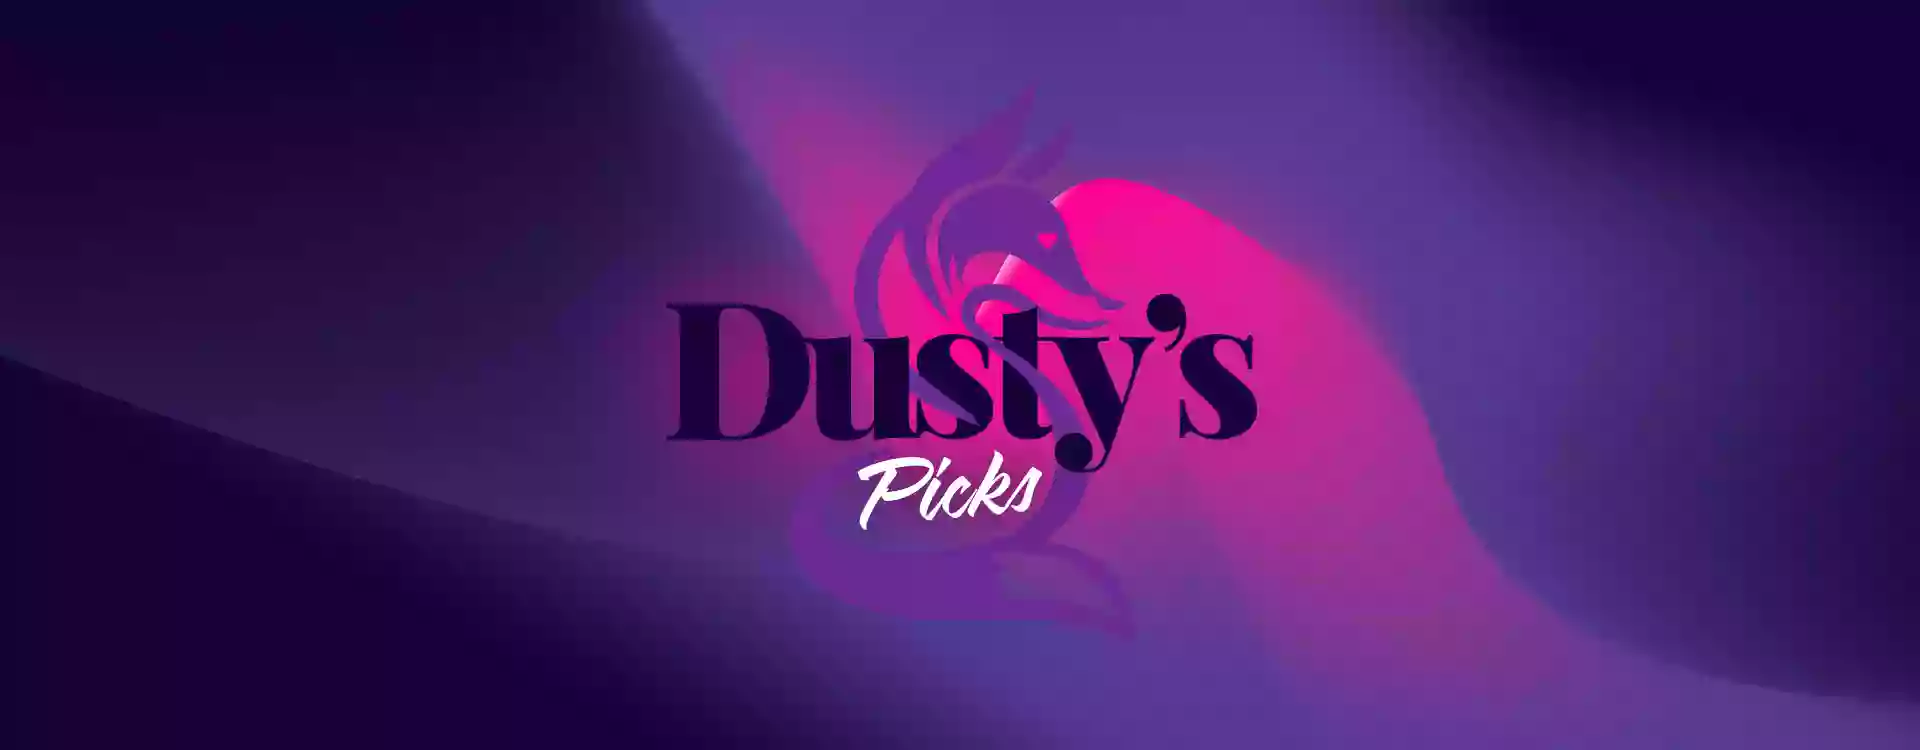 Dusty's